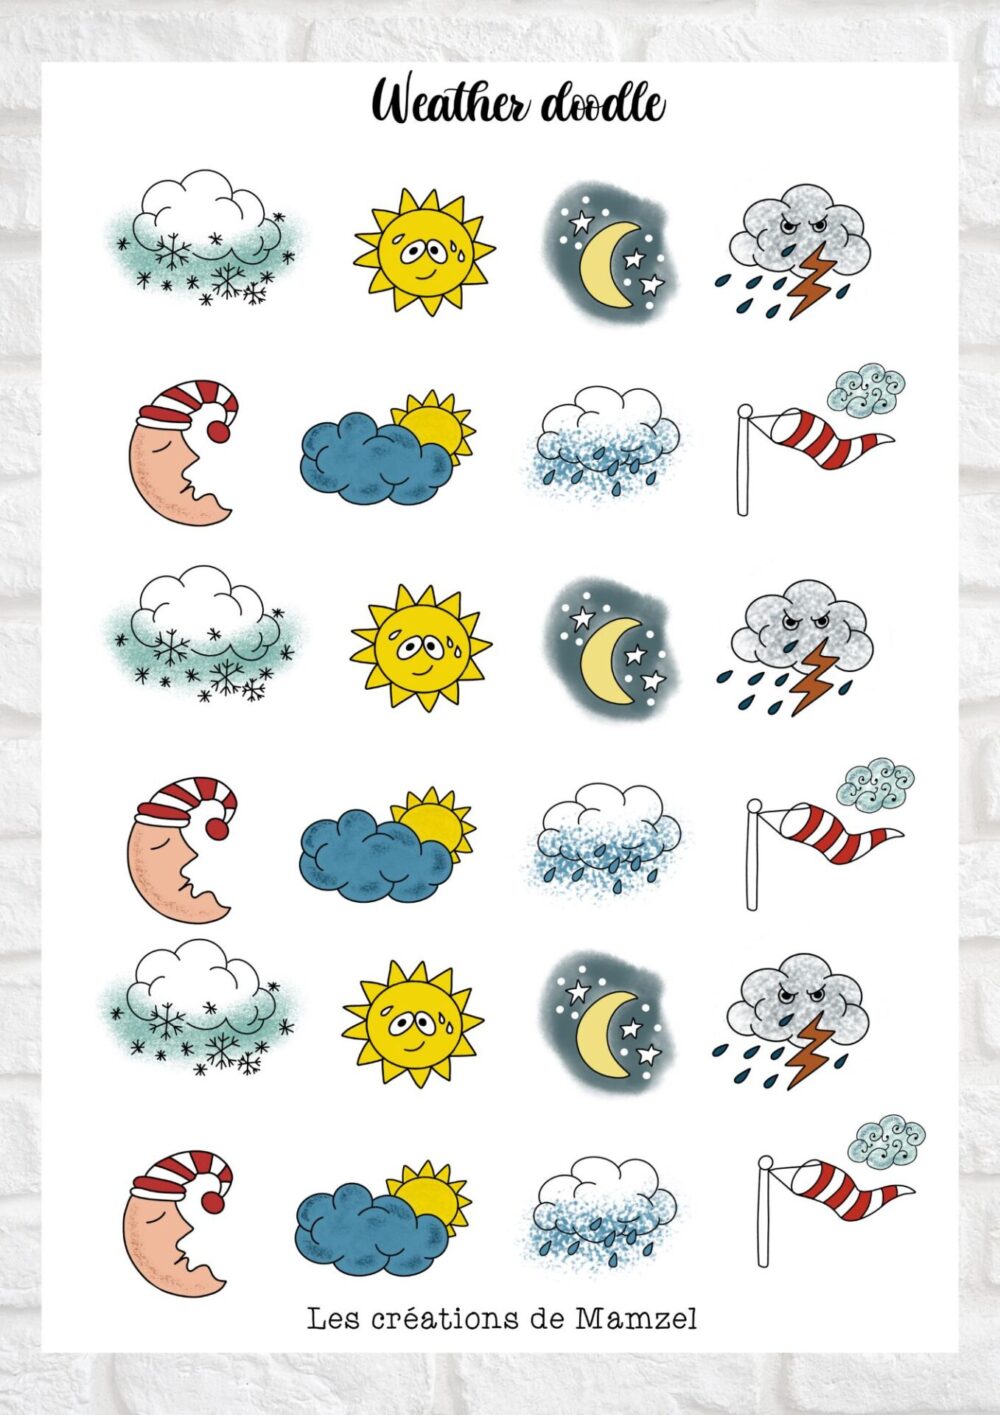 Vente planche de stickers pour enfants / ados - Boutique en ligne - Création française - Weather doodle sticker temps météo